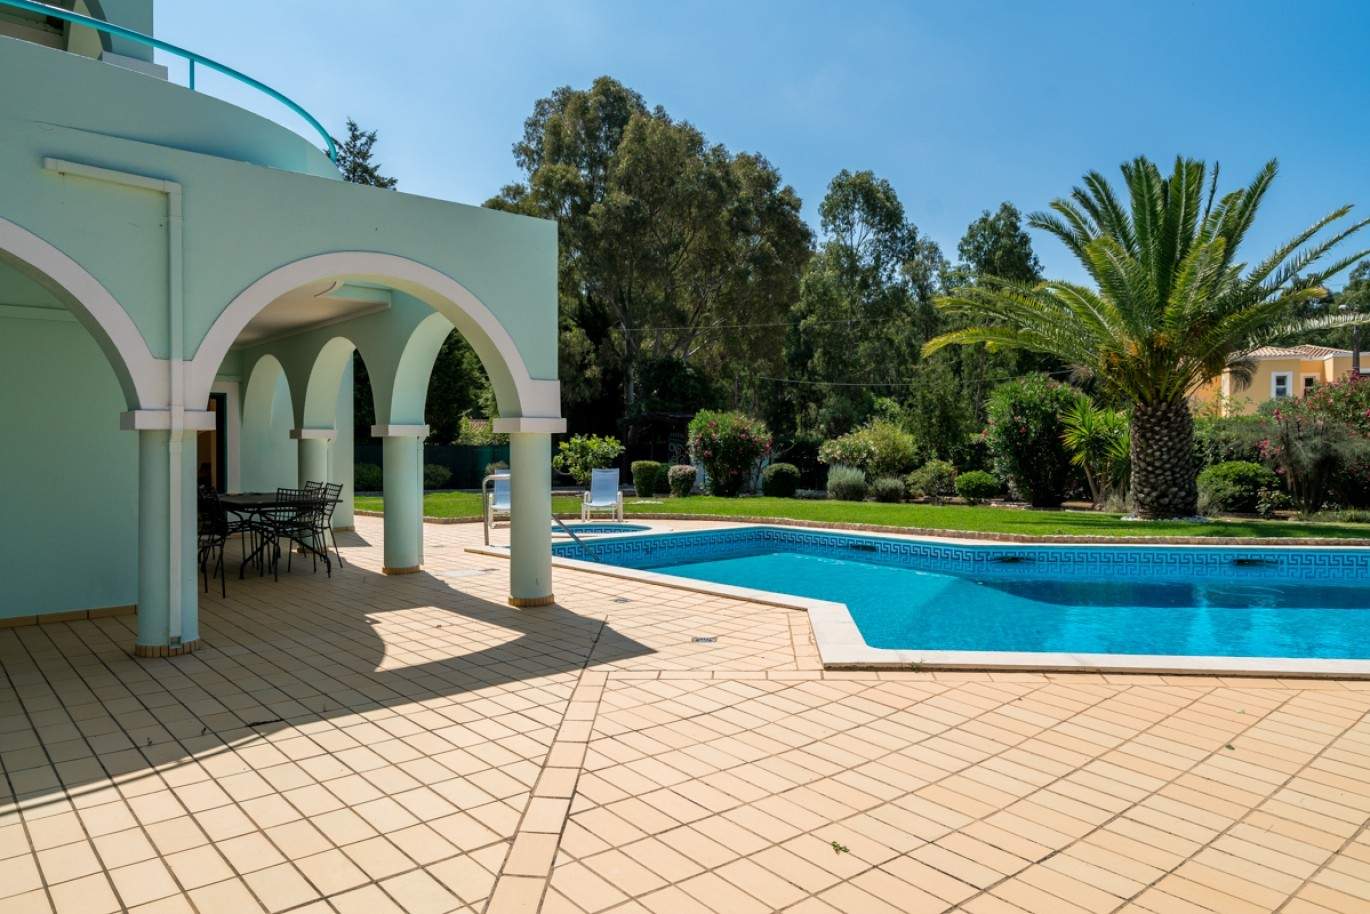 Venda de moradia com piscina na Penina, Alvor, Algarve, Portugal_83412